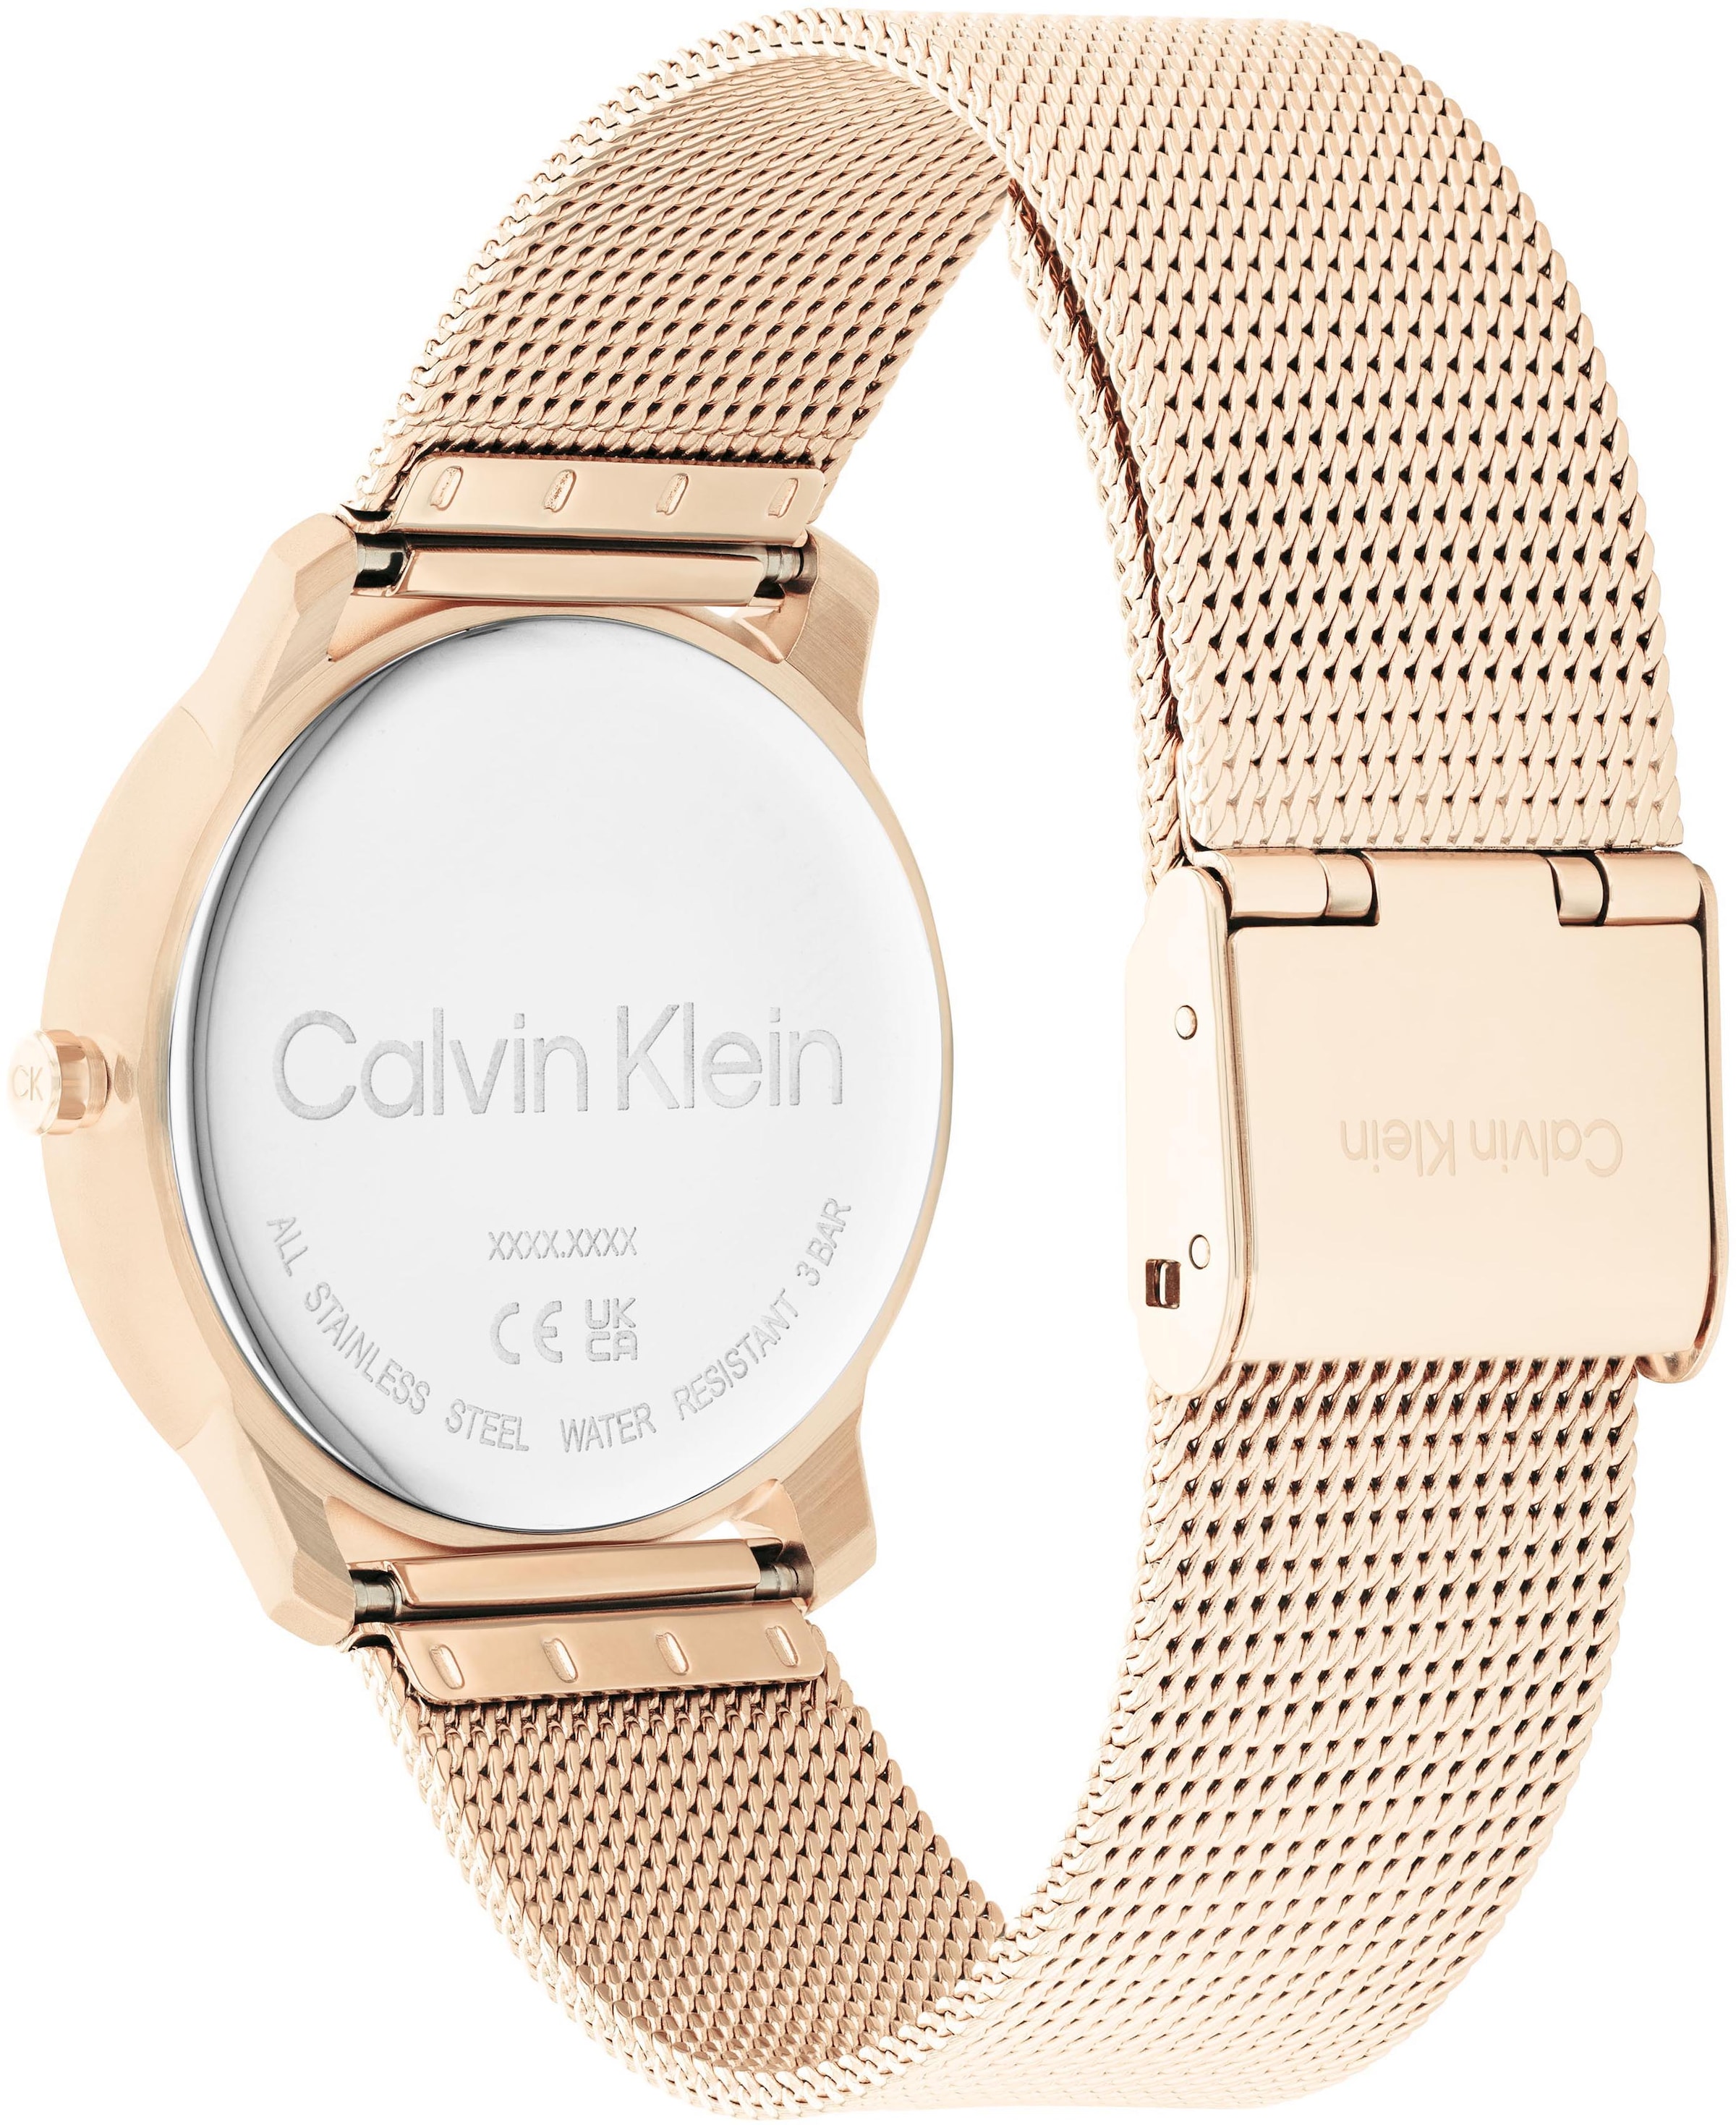 Calvin Klein Quarzuhr »Iconic Mesh 35 mm, 25200035«, Armbanduhr, Damenuhr, Mineralglas, IP-Beschichtung